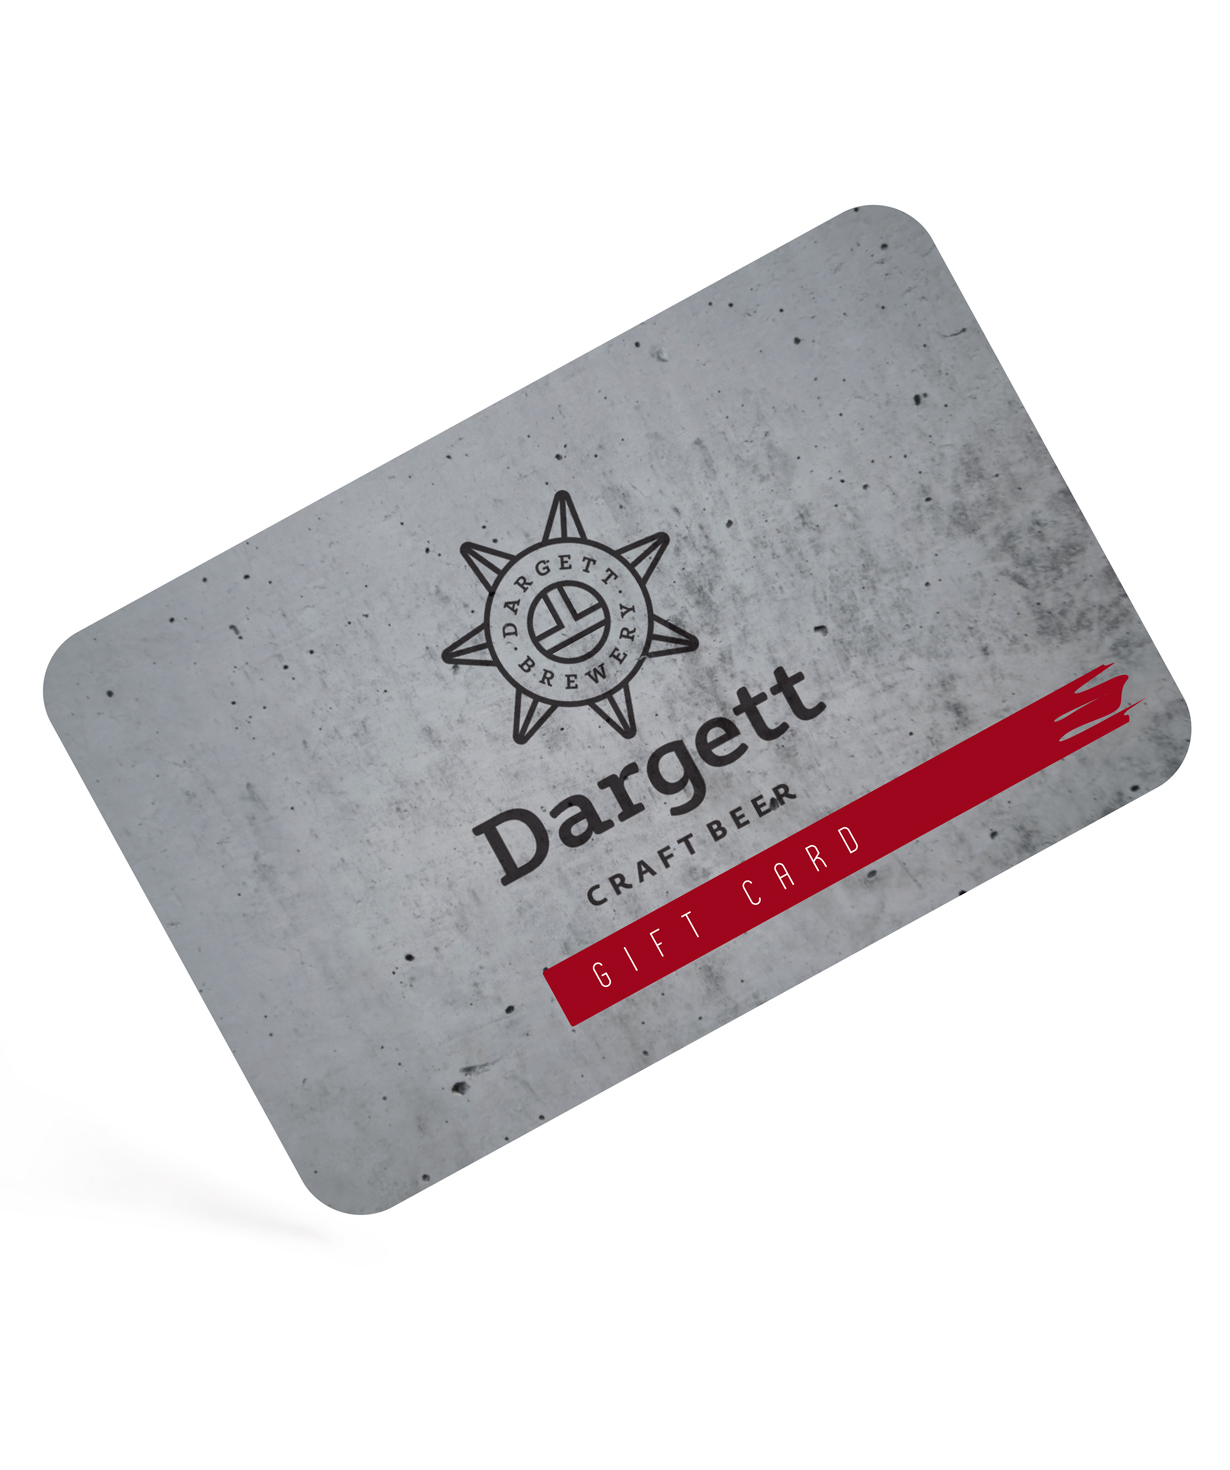 Նվեր-քարտ «Dargett» 40.000